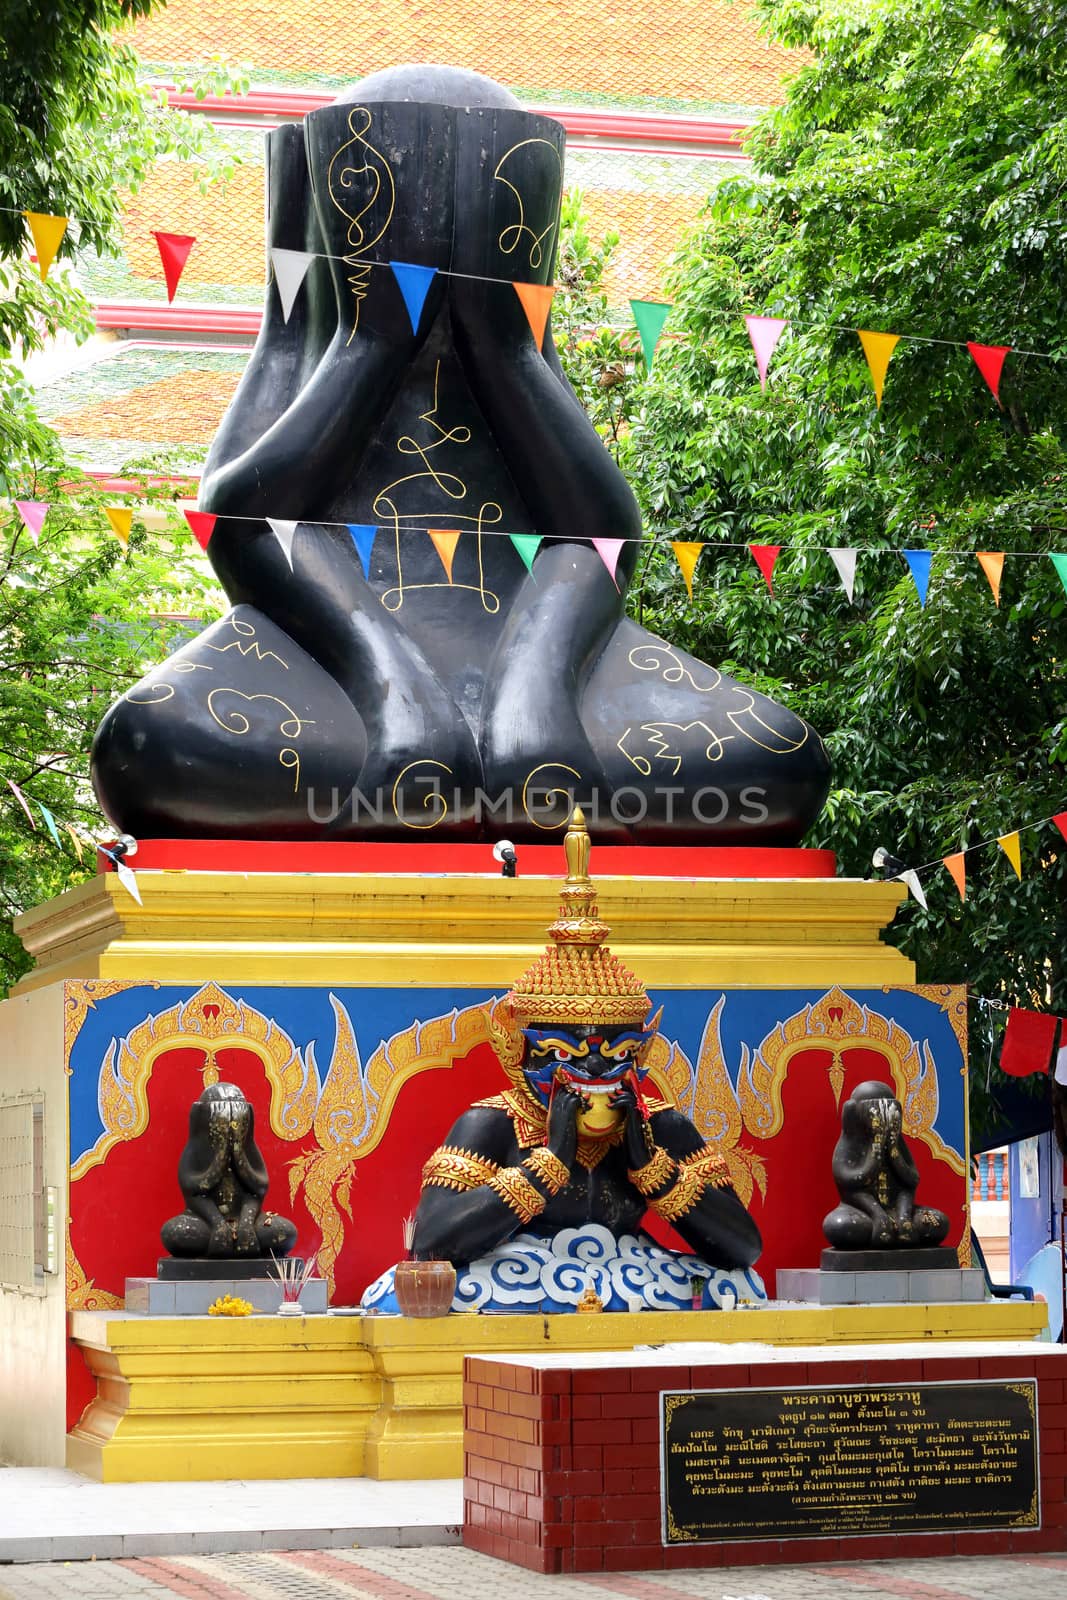 Phra Pidta (closed eyes buddha) and Phra Rahu at Thai temple